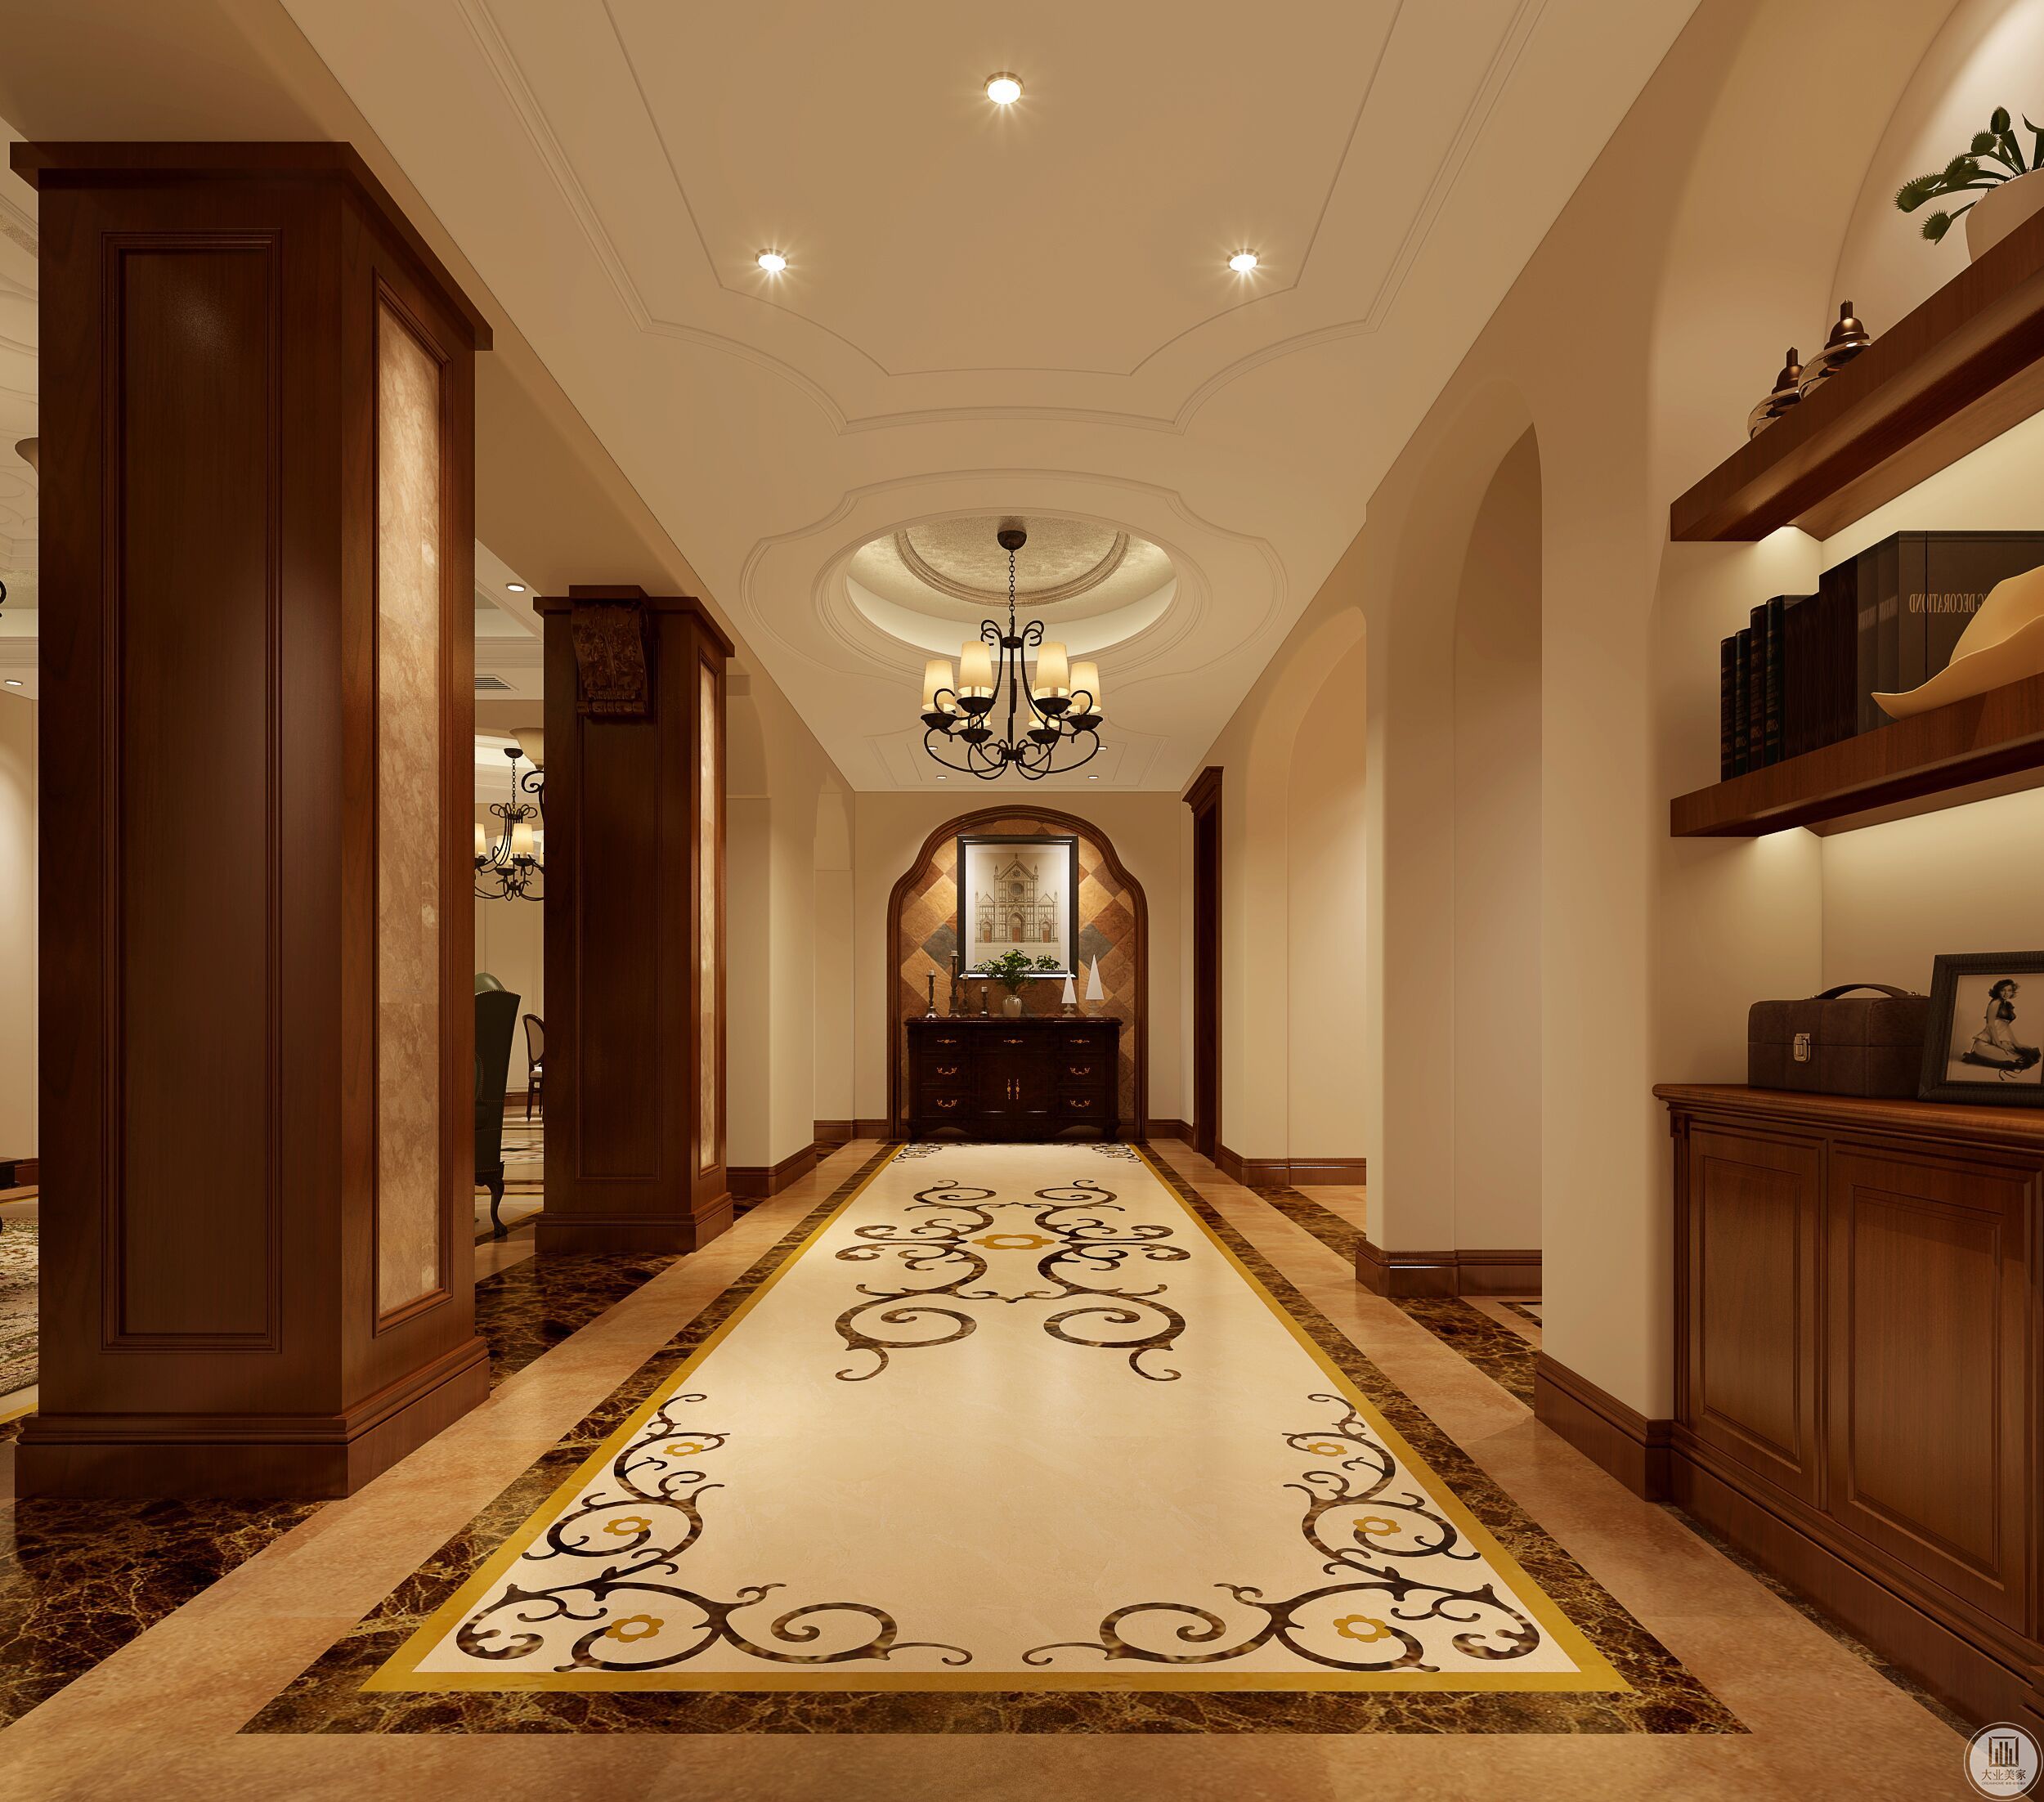 非常时尚和气氛的门廊，一个美式复古半高的柜子与花色瓷砖一起，是展现美式时尚的古典气息。